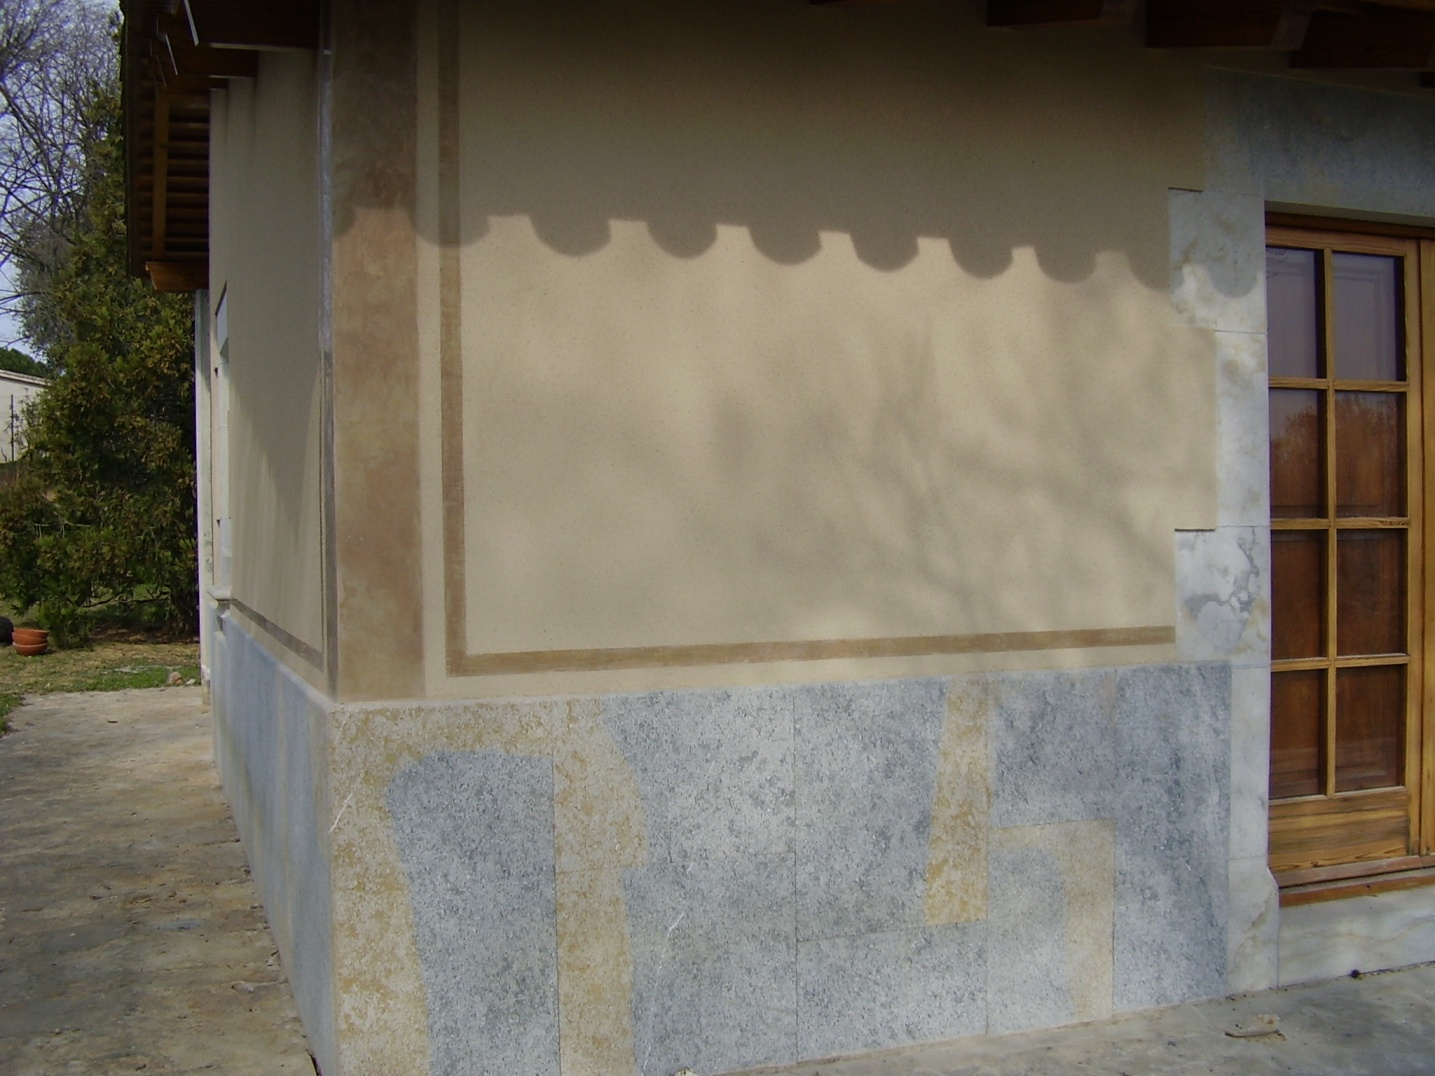 Pintura petrea proyectada en fachada de Girona